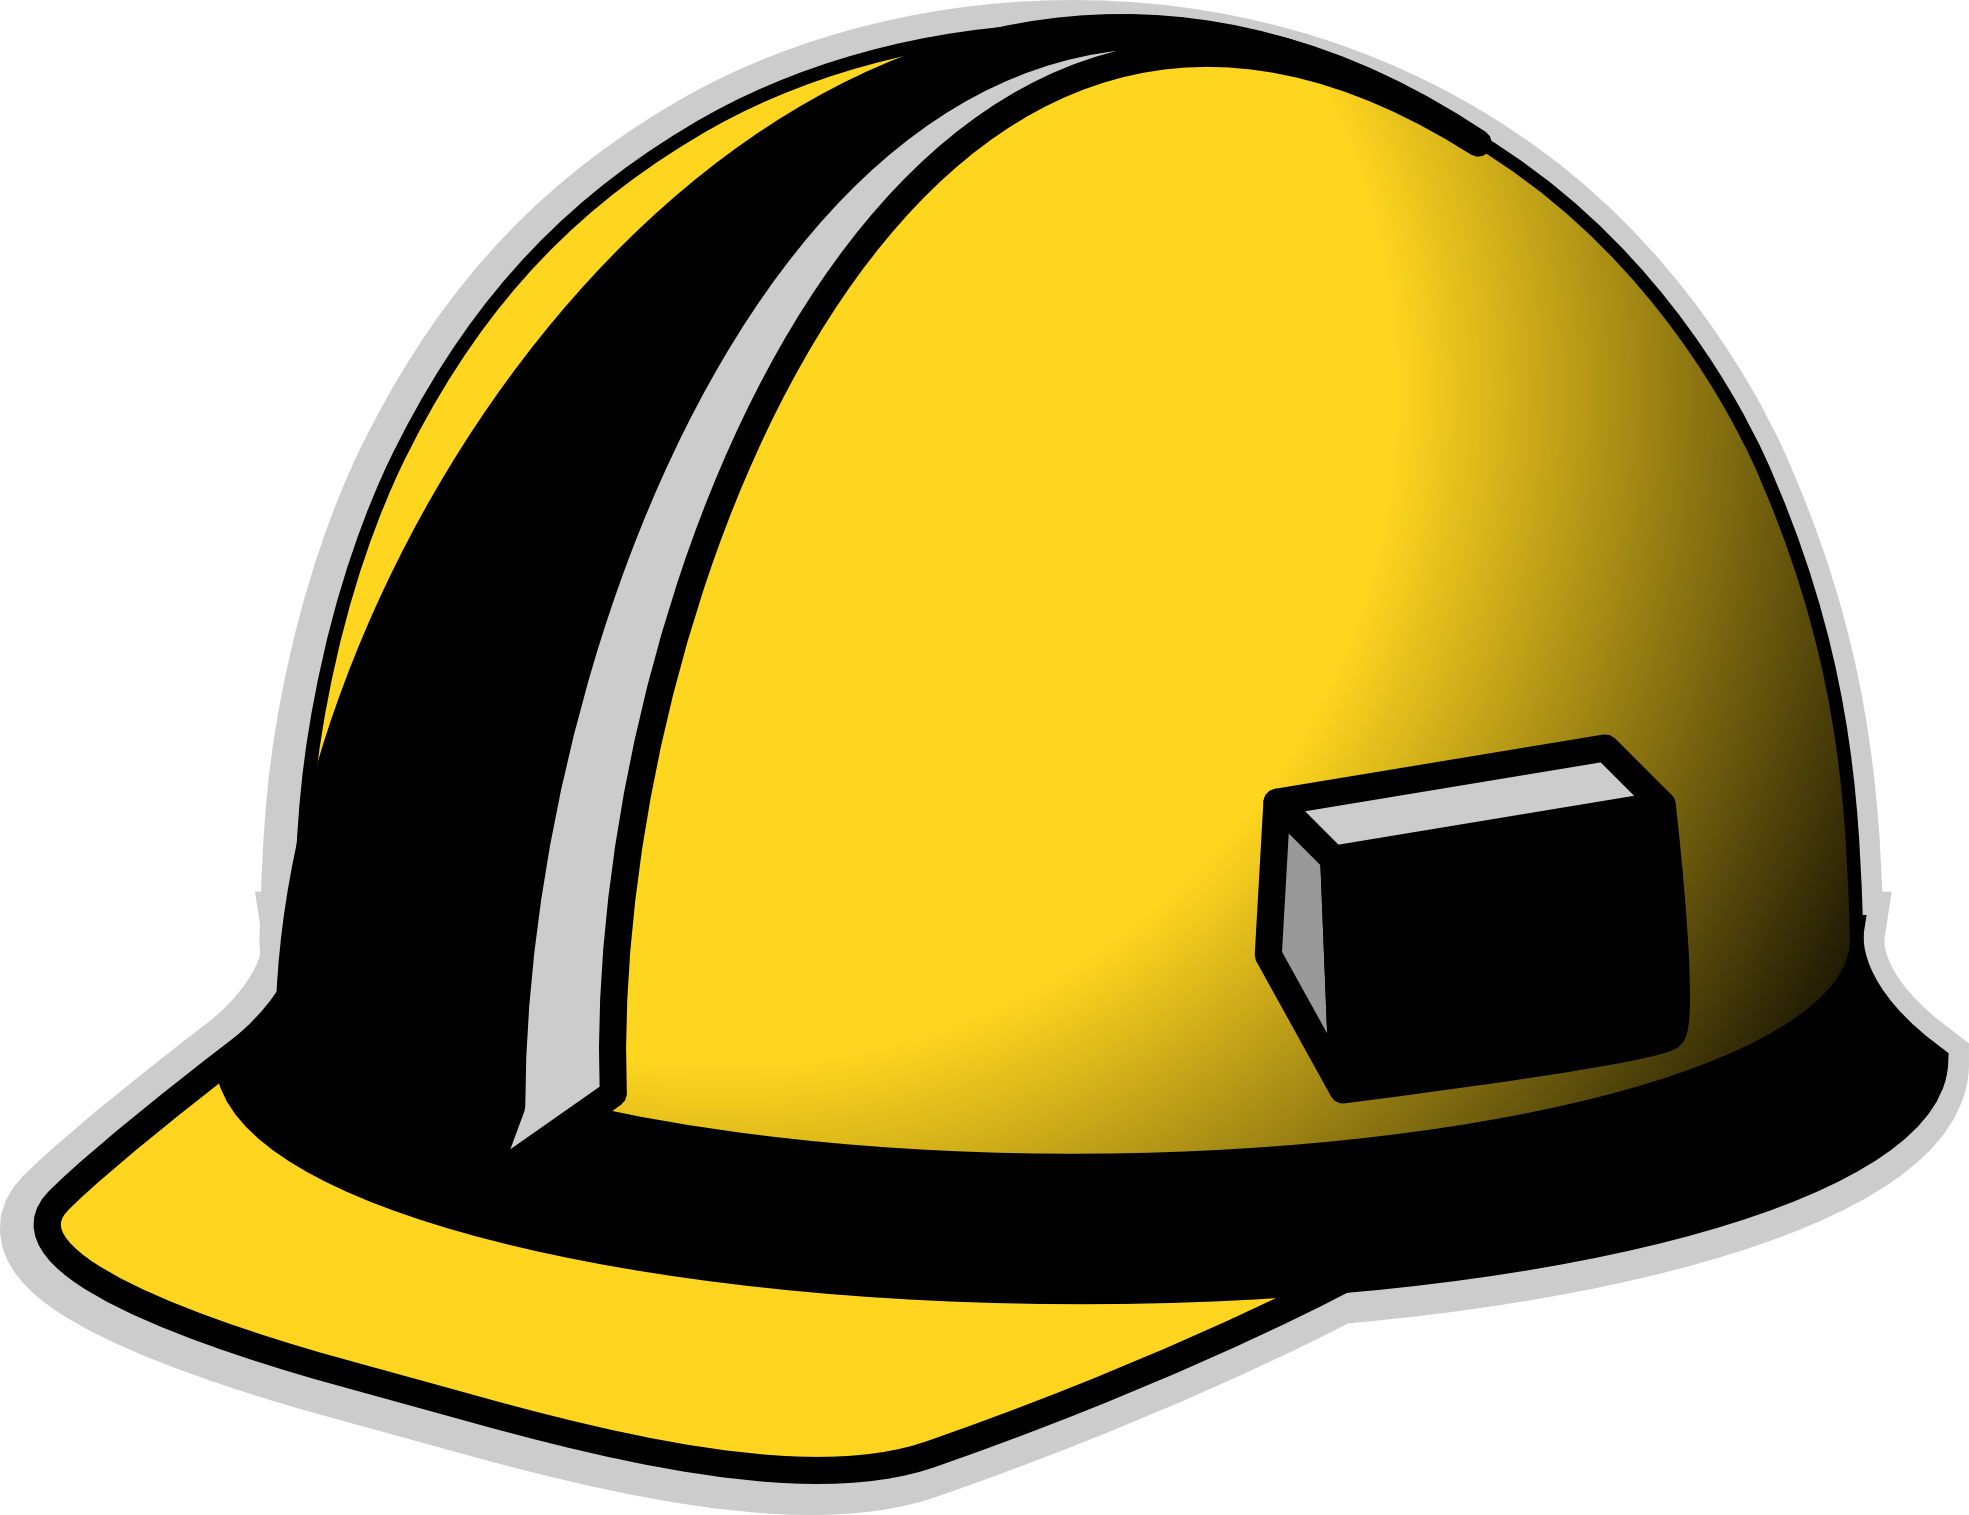 Construction helmet clip art 